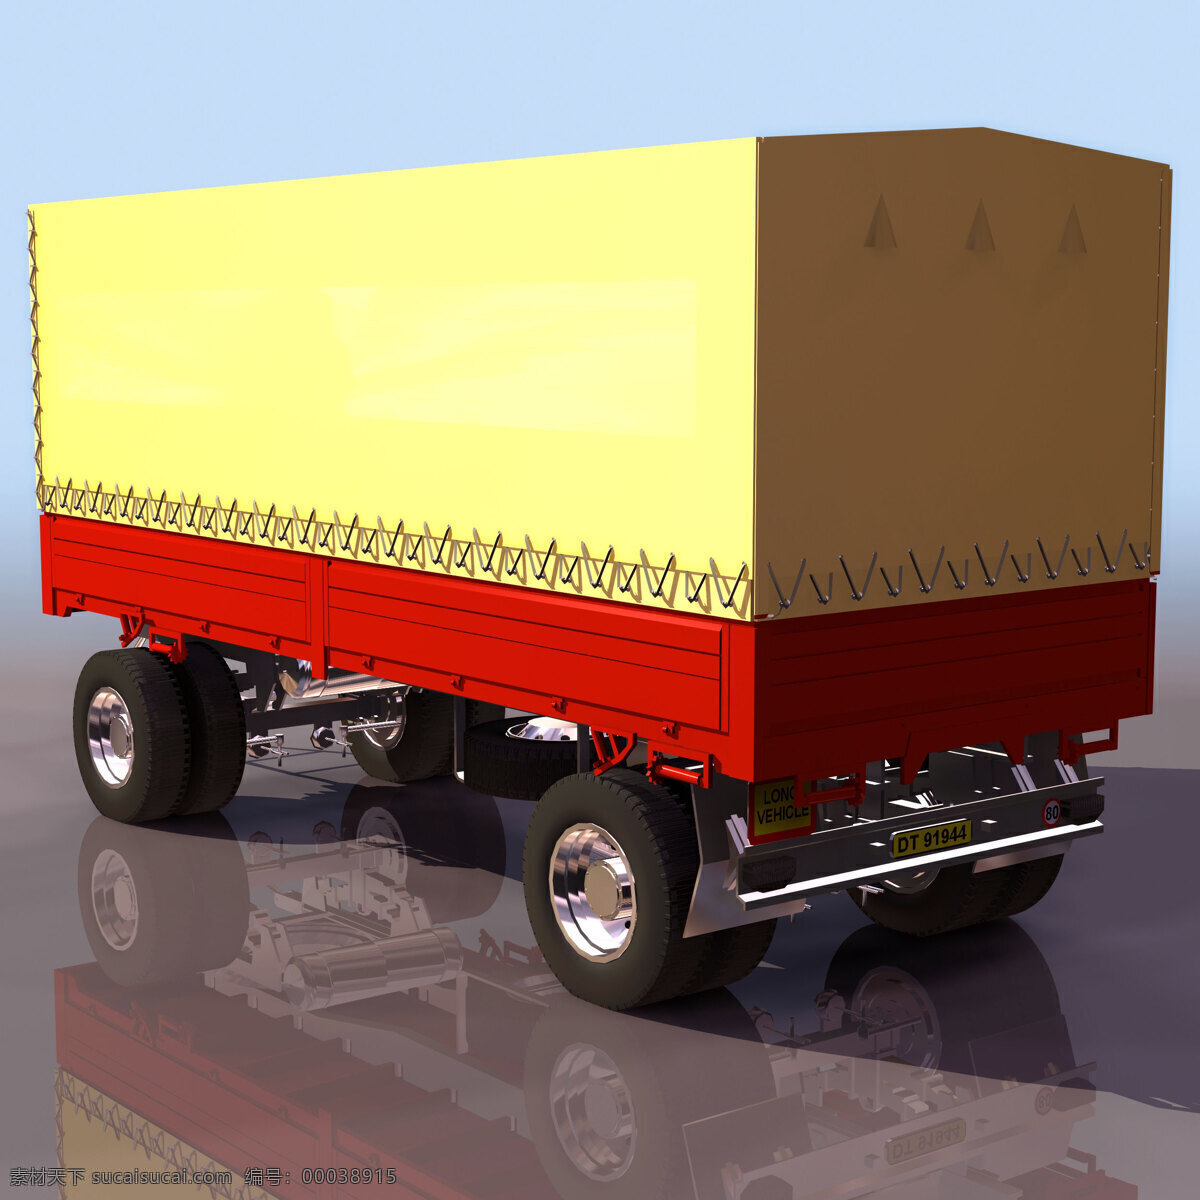 运货 车辆 模型 mtrailer 货车 运货车辆模型 机动车辆 3d模型素材 电器模型